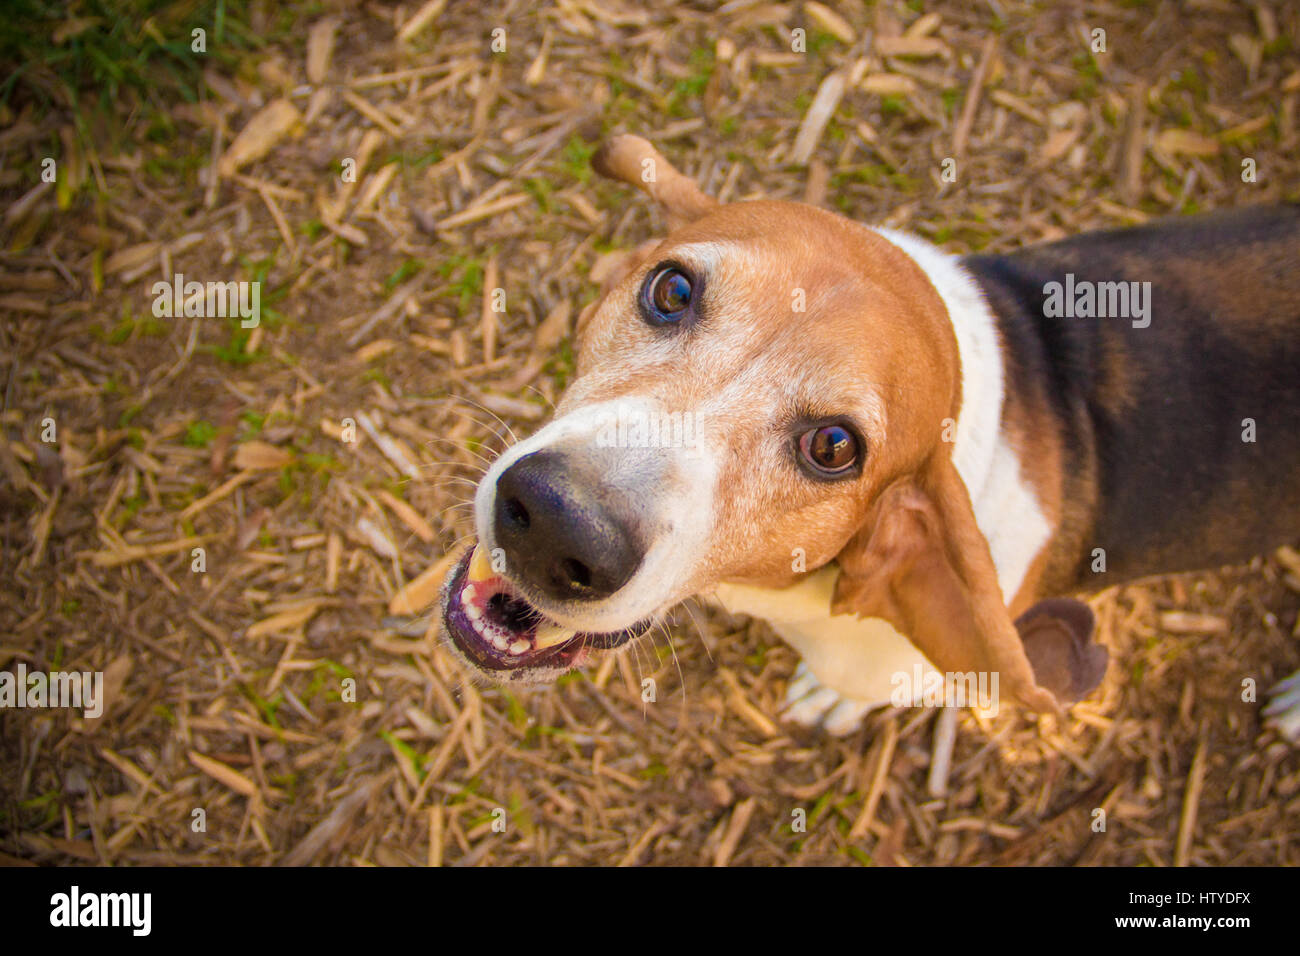 Basset Hound dog looking up Stock Photo